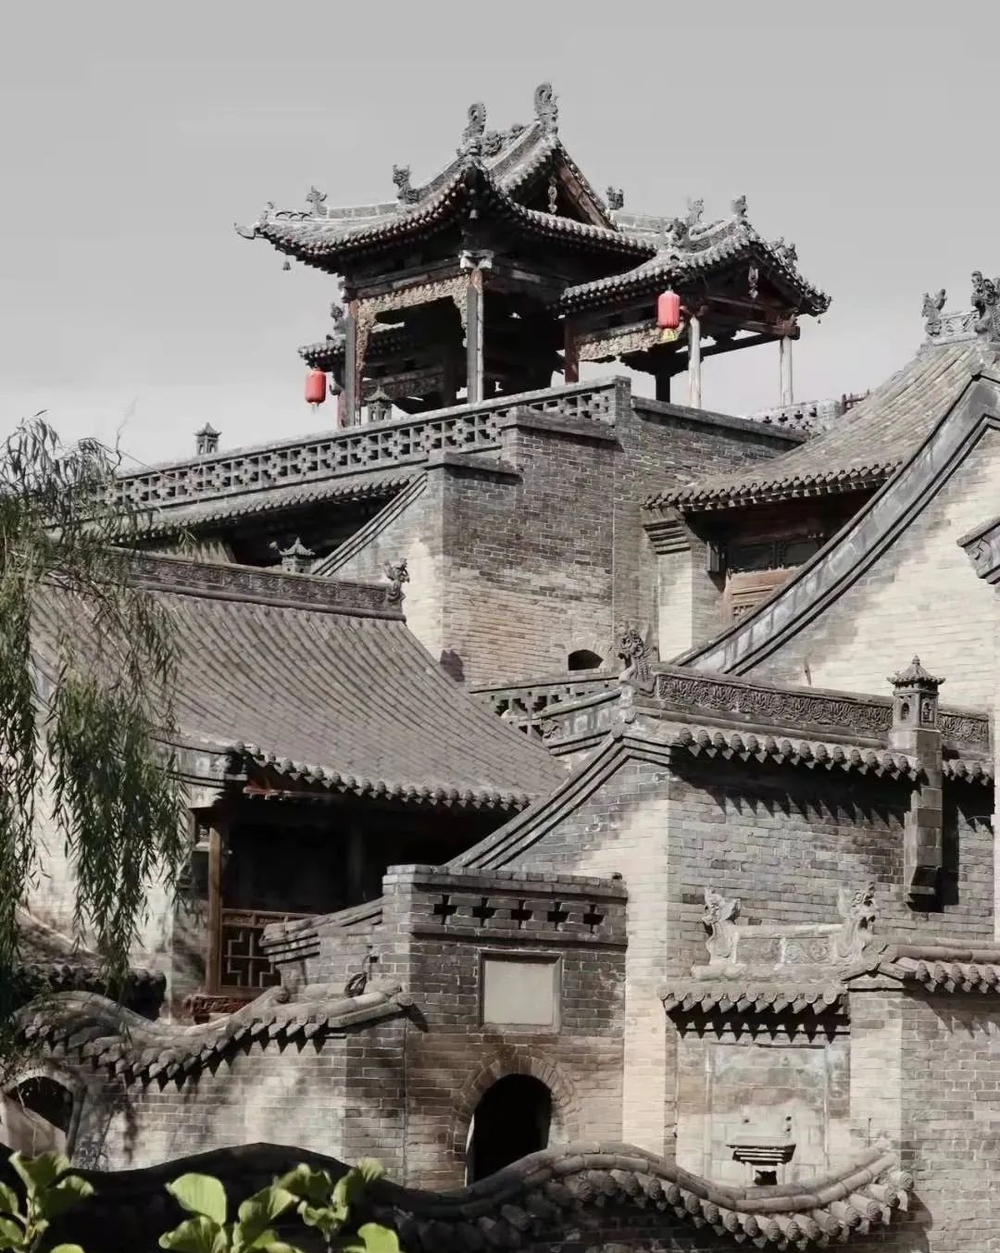 Khuôn viên tư gia lớn nhất Trung Quốc: 300 năm mới hoàn thành, “rộng” hơn Tử Cấm Thành 100.000m2, là nơi ở của gia tộc phồn vinh nhất một thời - Ảnh 3.